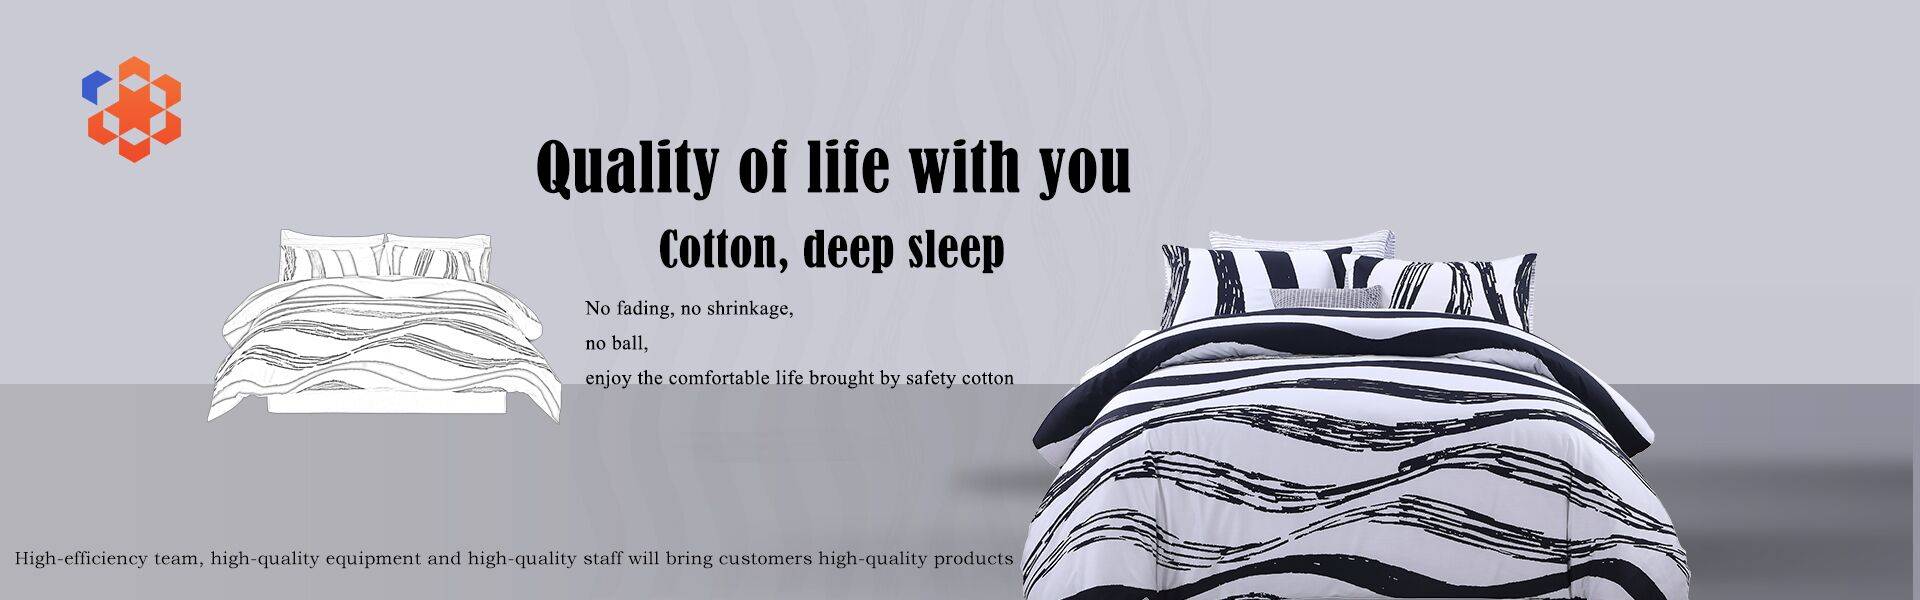 Llençol de llit d'alta qualitat amb contingut 100% cotó